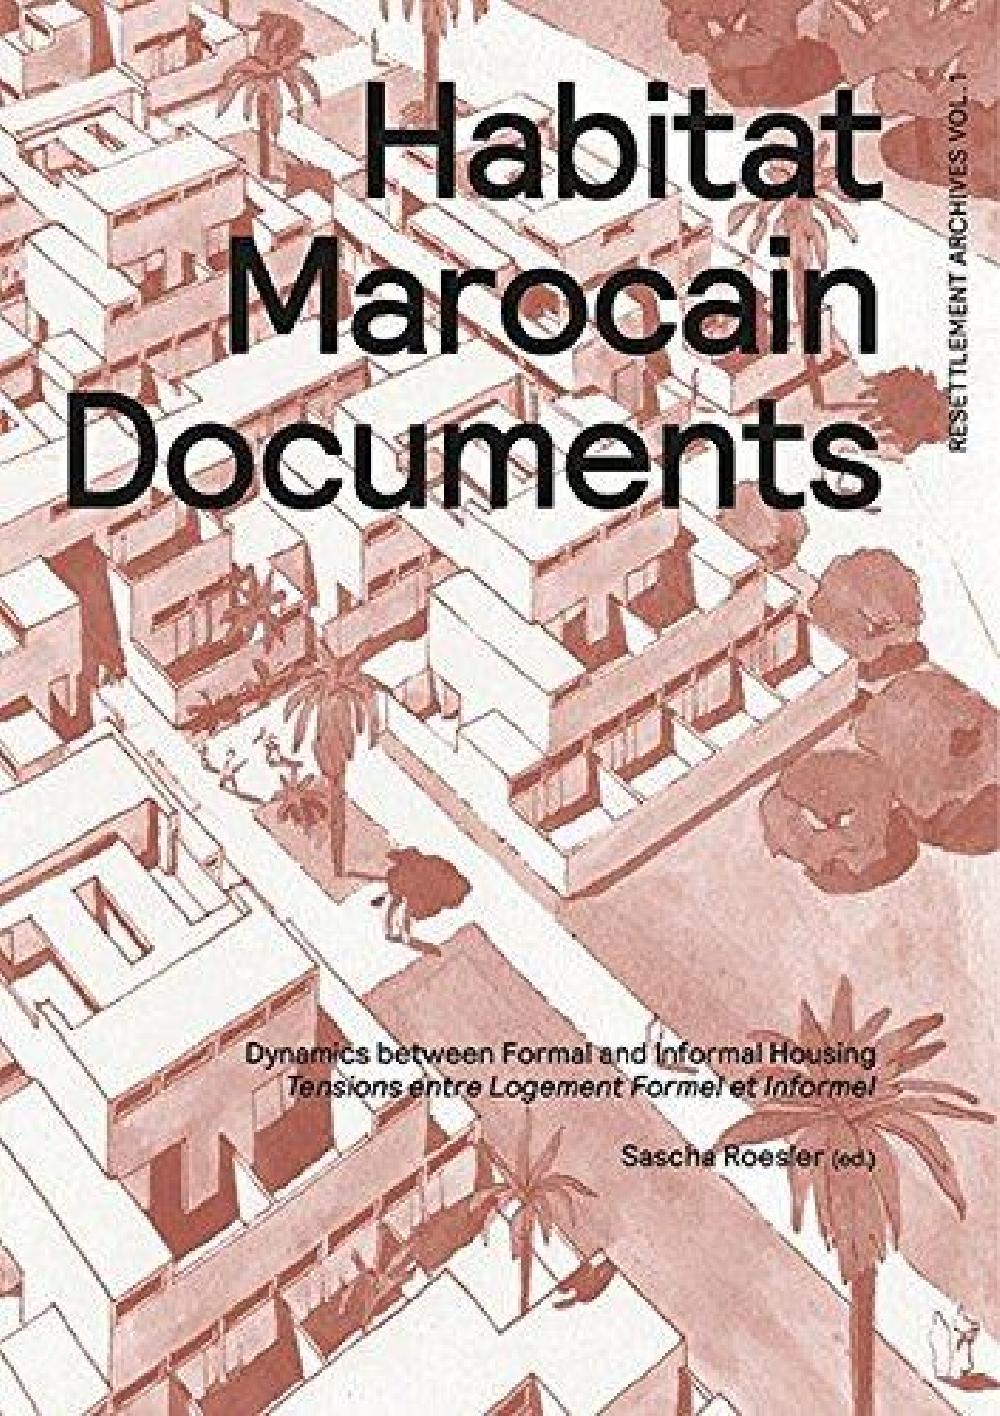 Habitat Marocain Documents